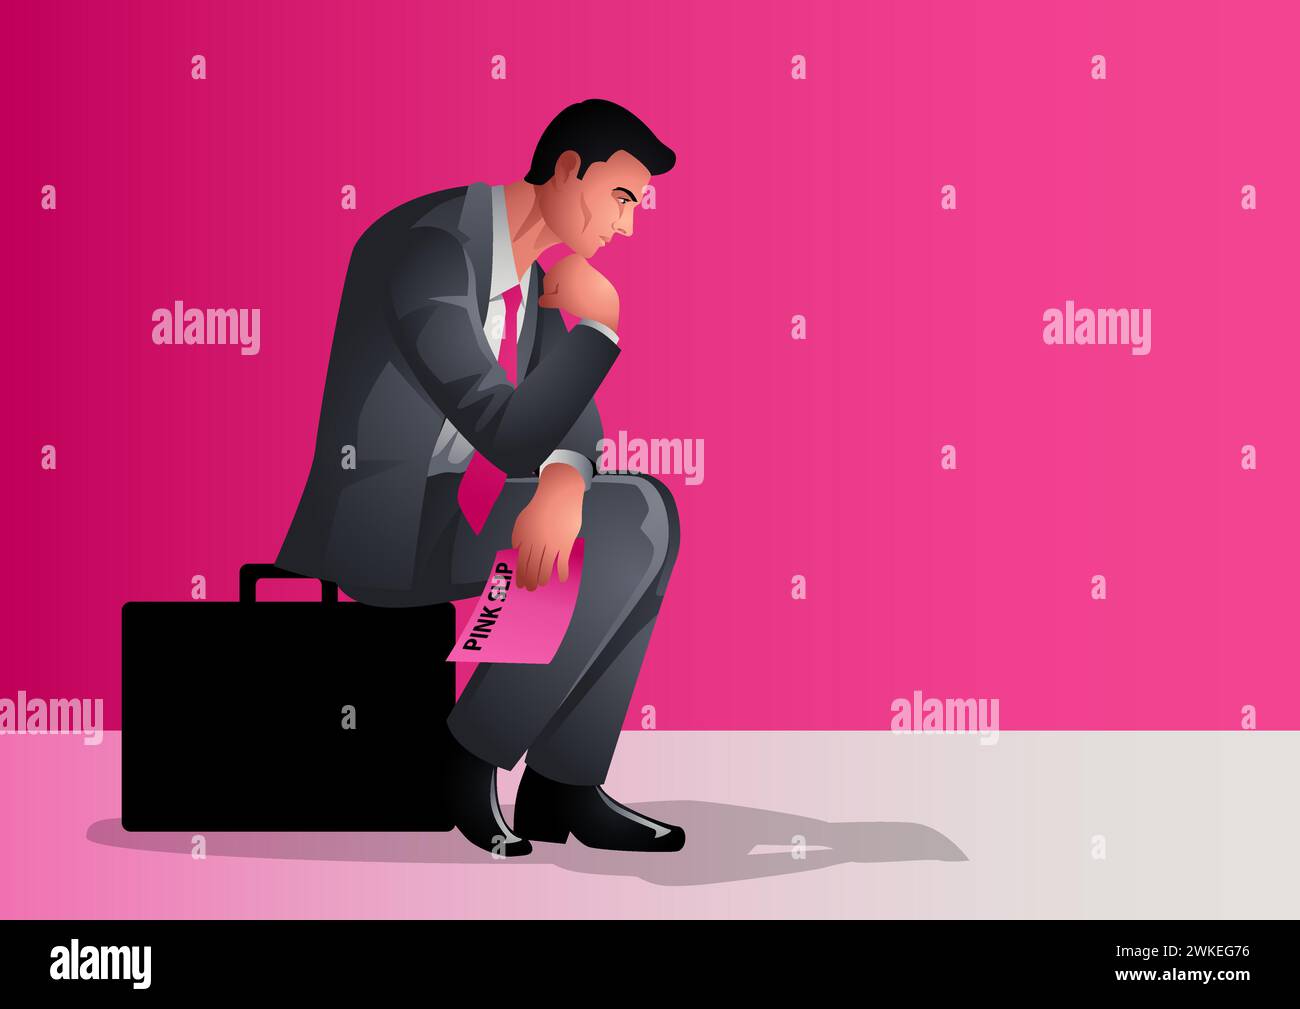 Homme d'affaires perdu dans la contemplation profonde. Il est assis sur une mallette tout en tenant un feuillet rose un symbole de perte potentielle d'emploi ou de changement, des émotions de uncerta Illustration de Vecteur